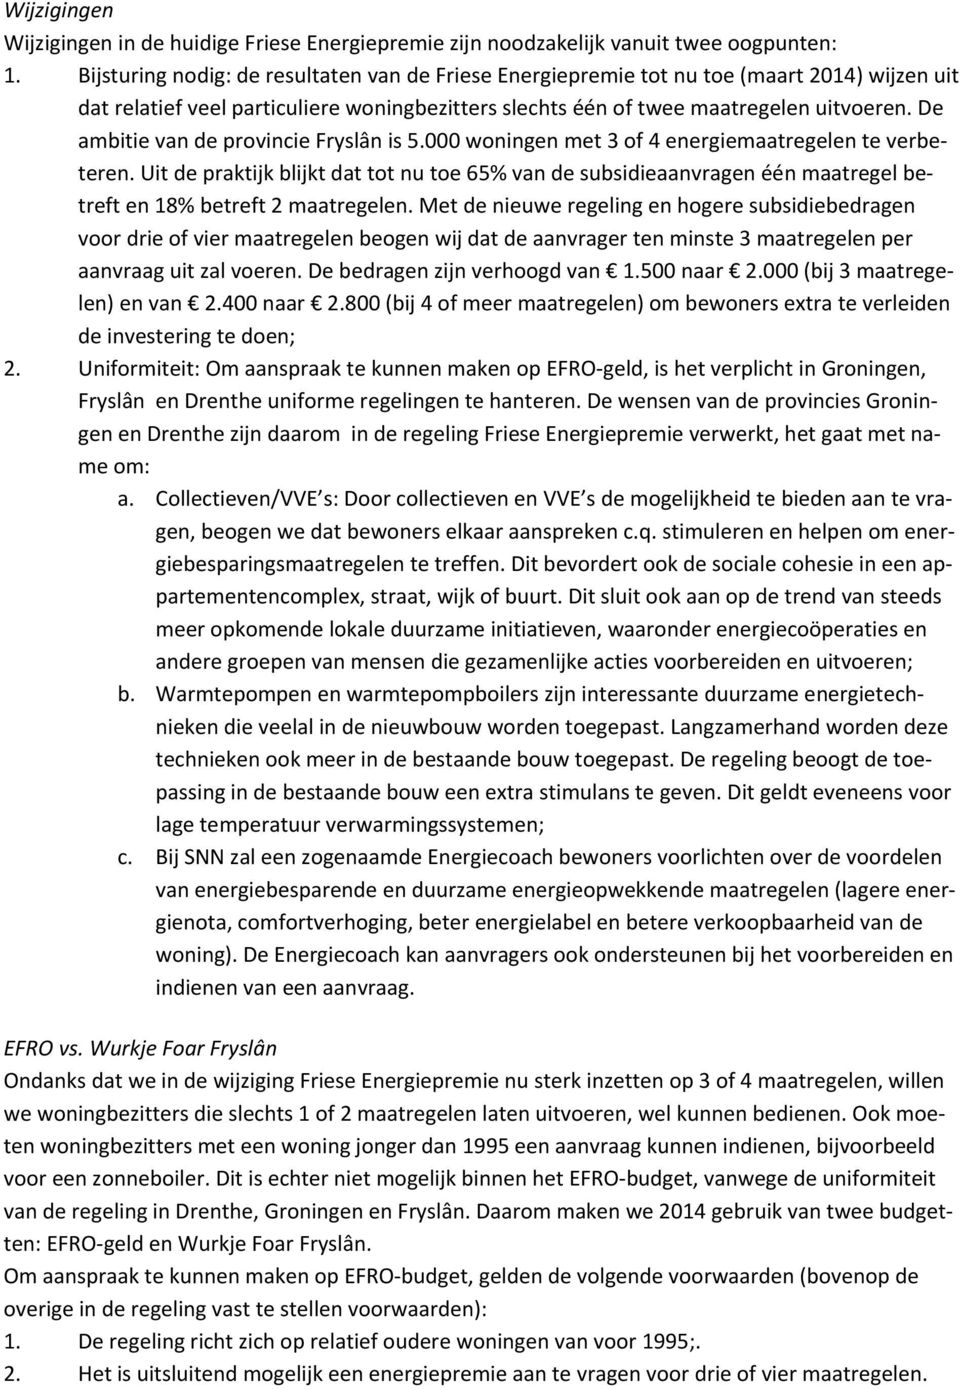 De ambitie van de provincie Fryslân is 5.000 woningen met 3 of 4 energiemaatregelen te verbeteren.